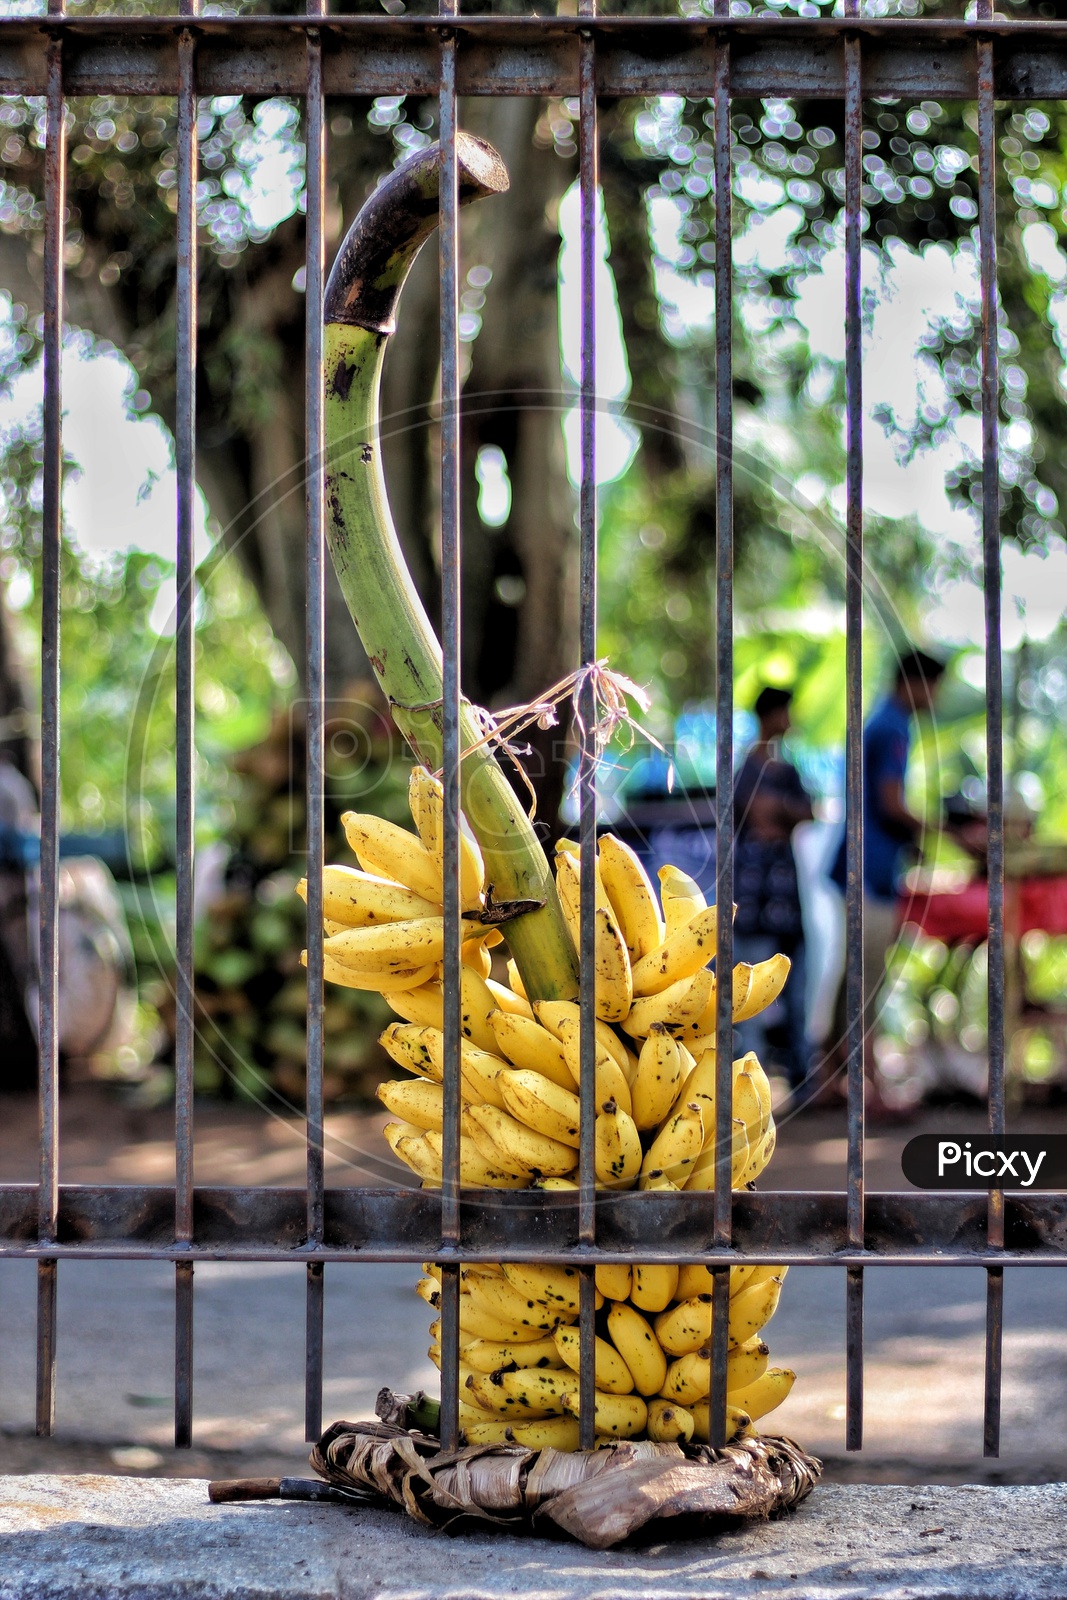 Banana behind bars